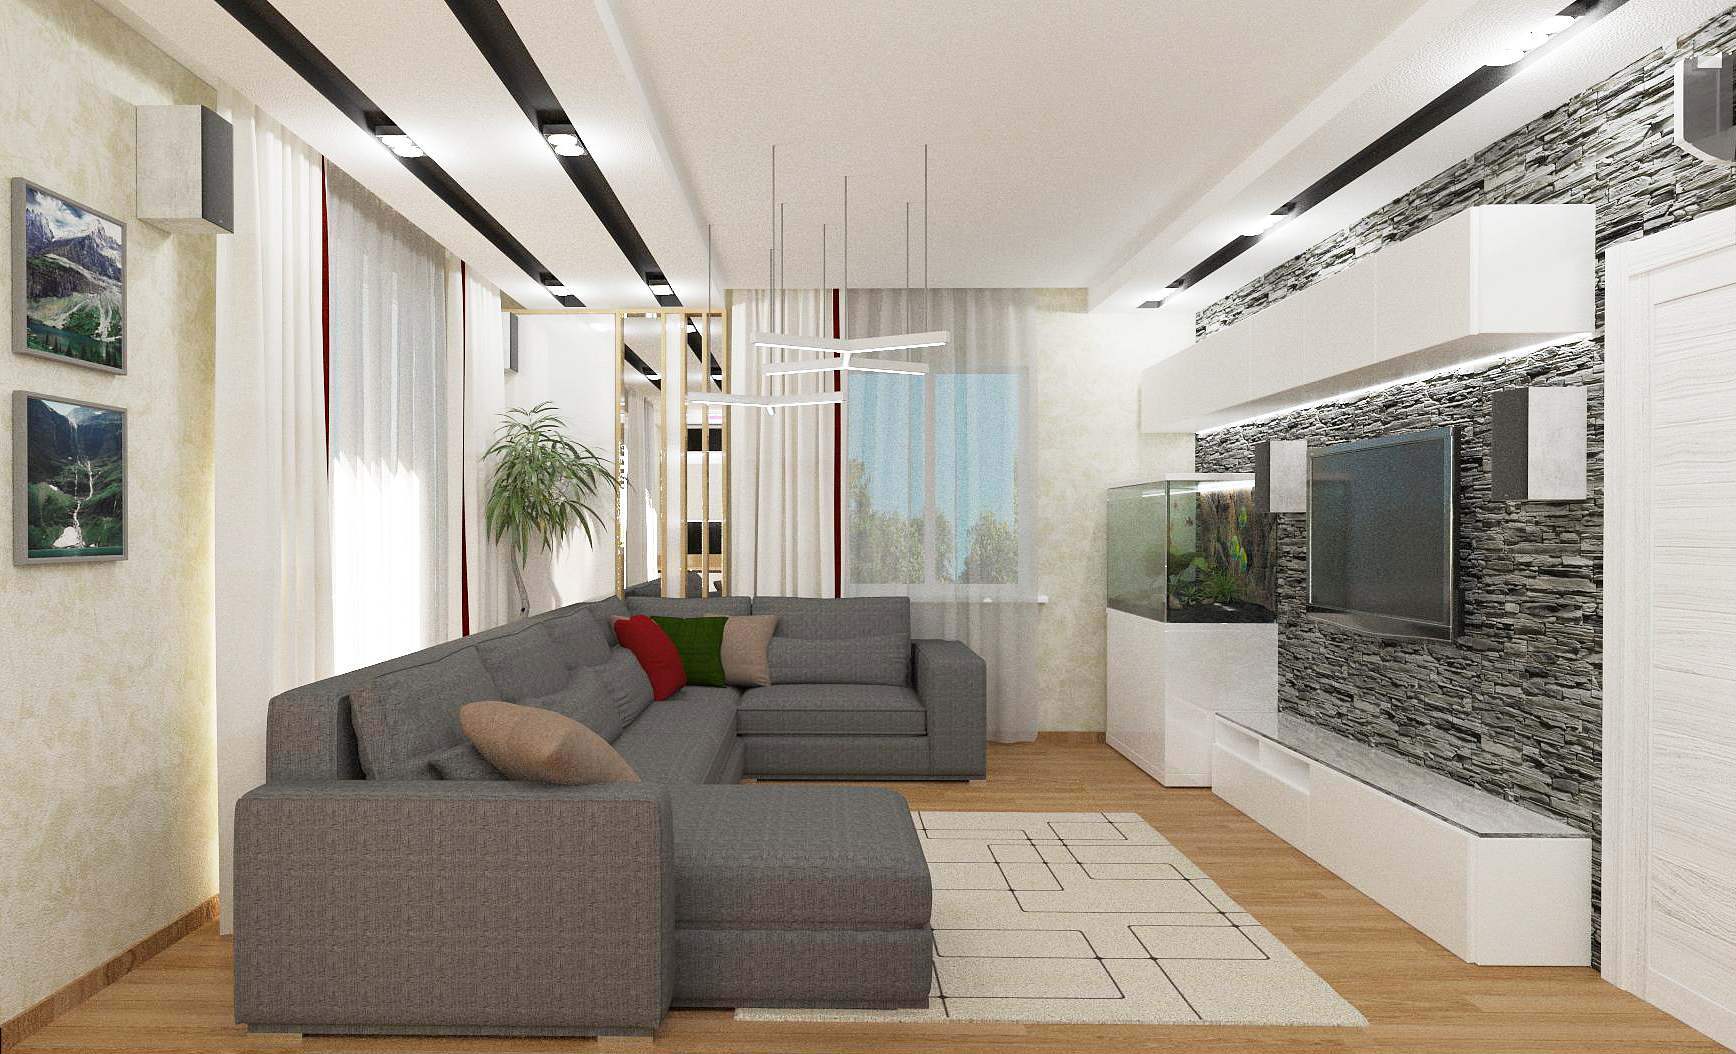 Интерьер гостиной с зонированием, проходной, балконом, open space и переговорной